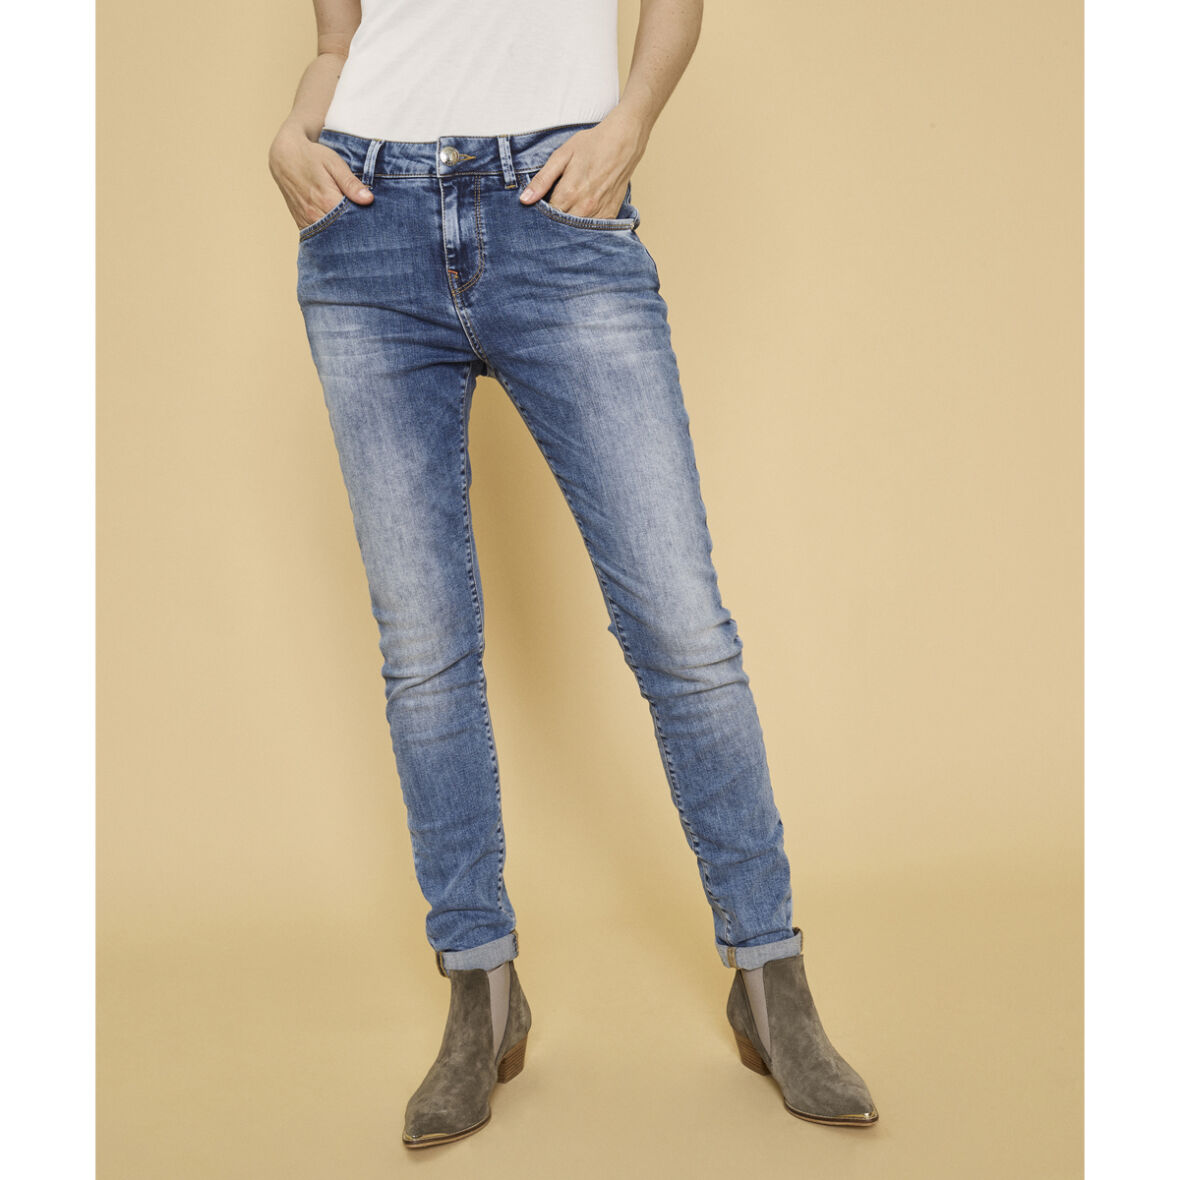 MOS MOS - Bradford Vintage Jeans Light Blue Jydepotten.dk Fri Fragt Over 39